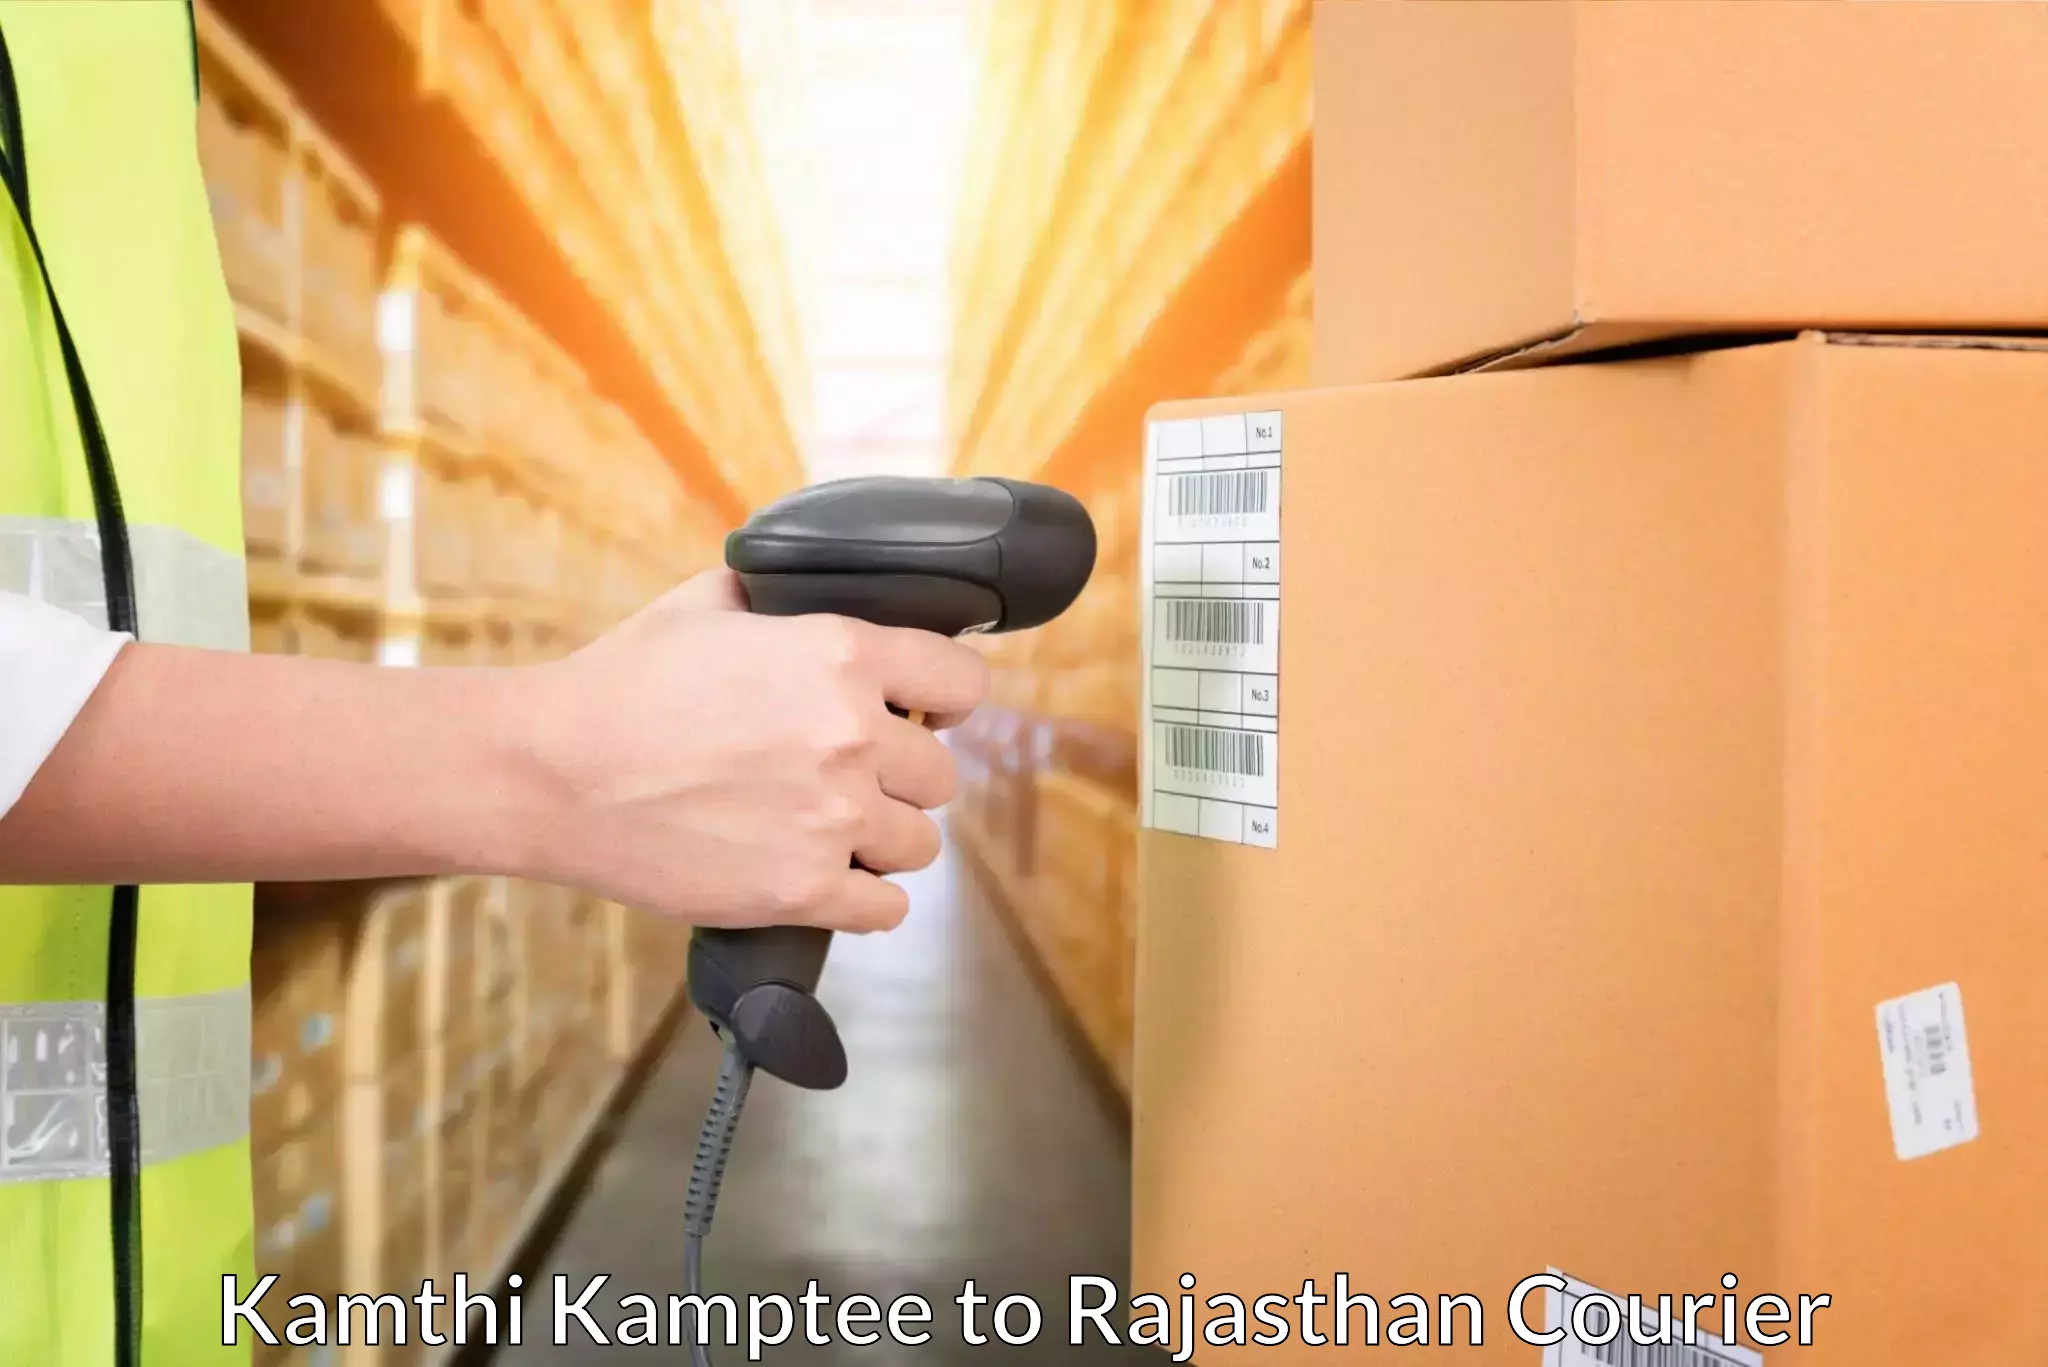 Express package handling Kamthi Kamptee to Nainwa